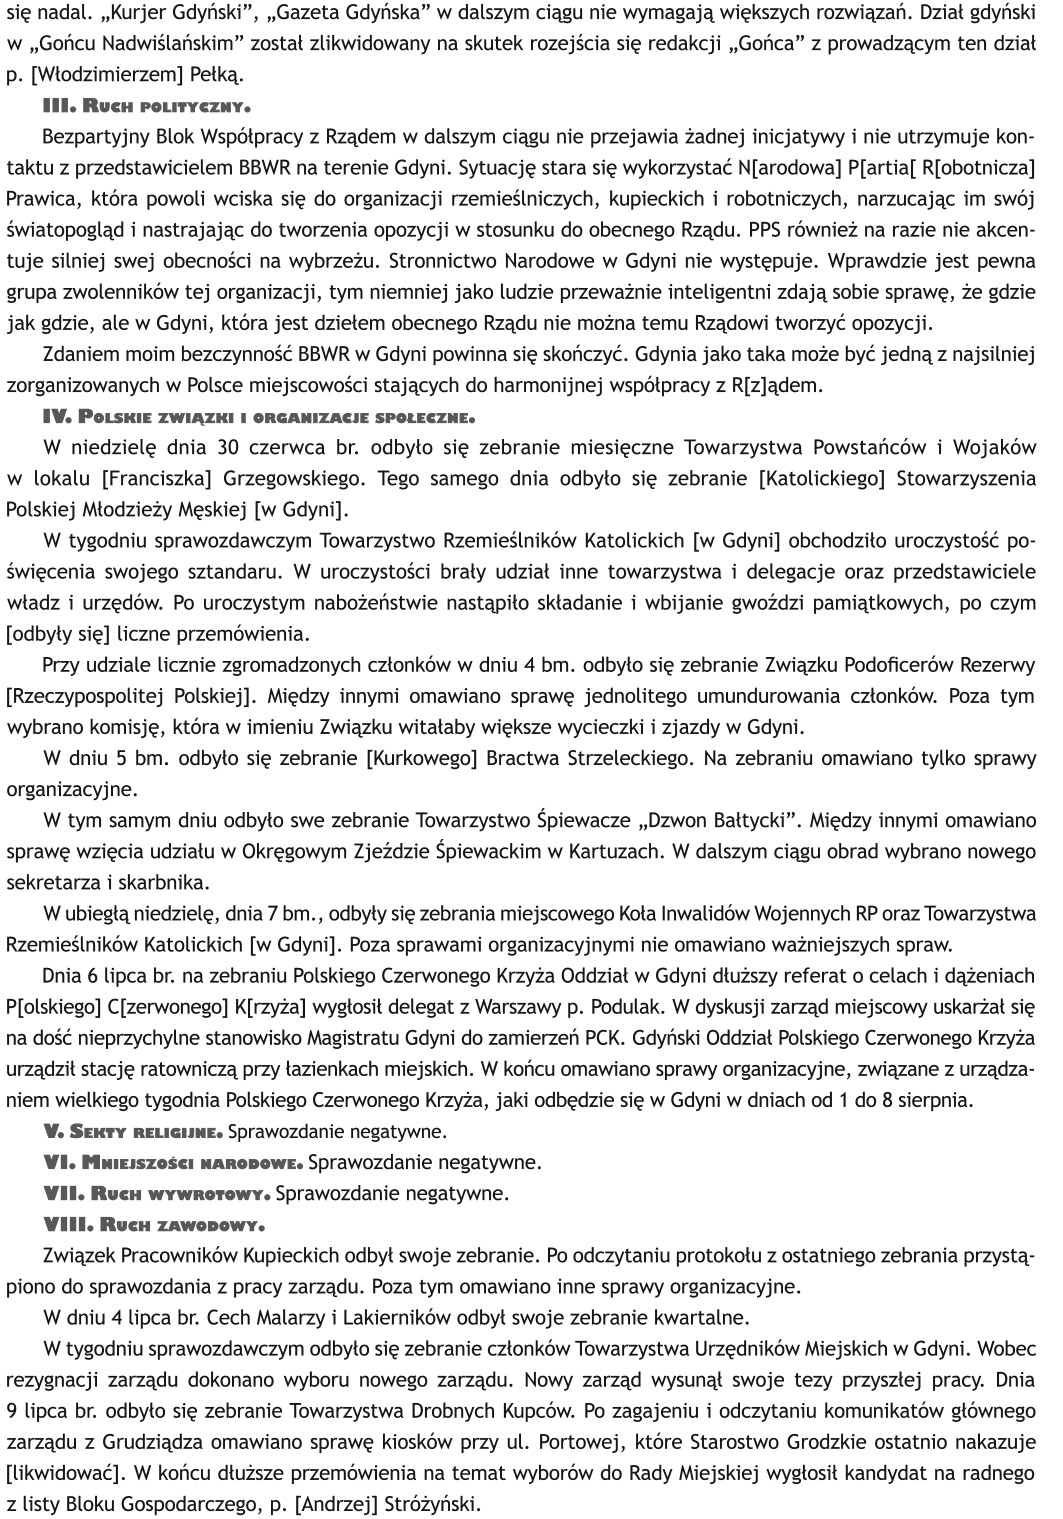 1929 lipiec 11 Gdynia - Sprawozdanie sytuacyjne Nr 144/Pf. p.o Starosty Grodzkiego w Gdyni Władysława Staniszewskiego za czas od 27 czerwca do 10 lipca 1929 roku, oryg. mps., APG O/G, sygn. 682/2288, s. 16-27